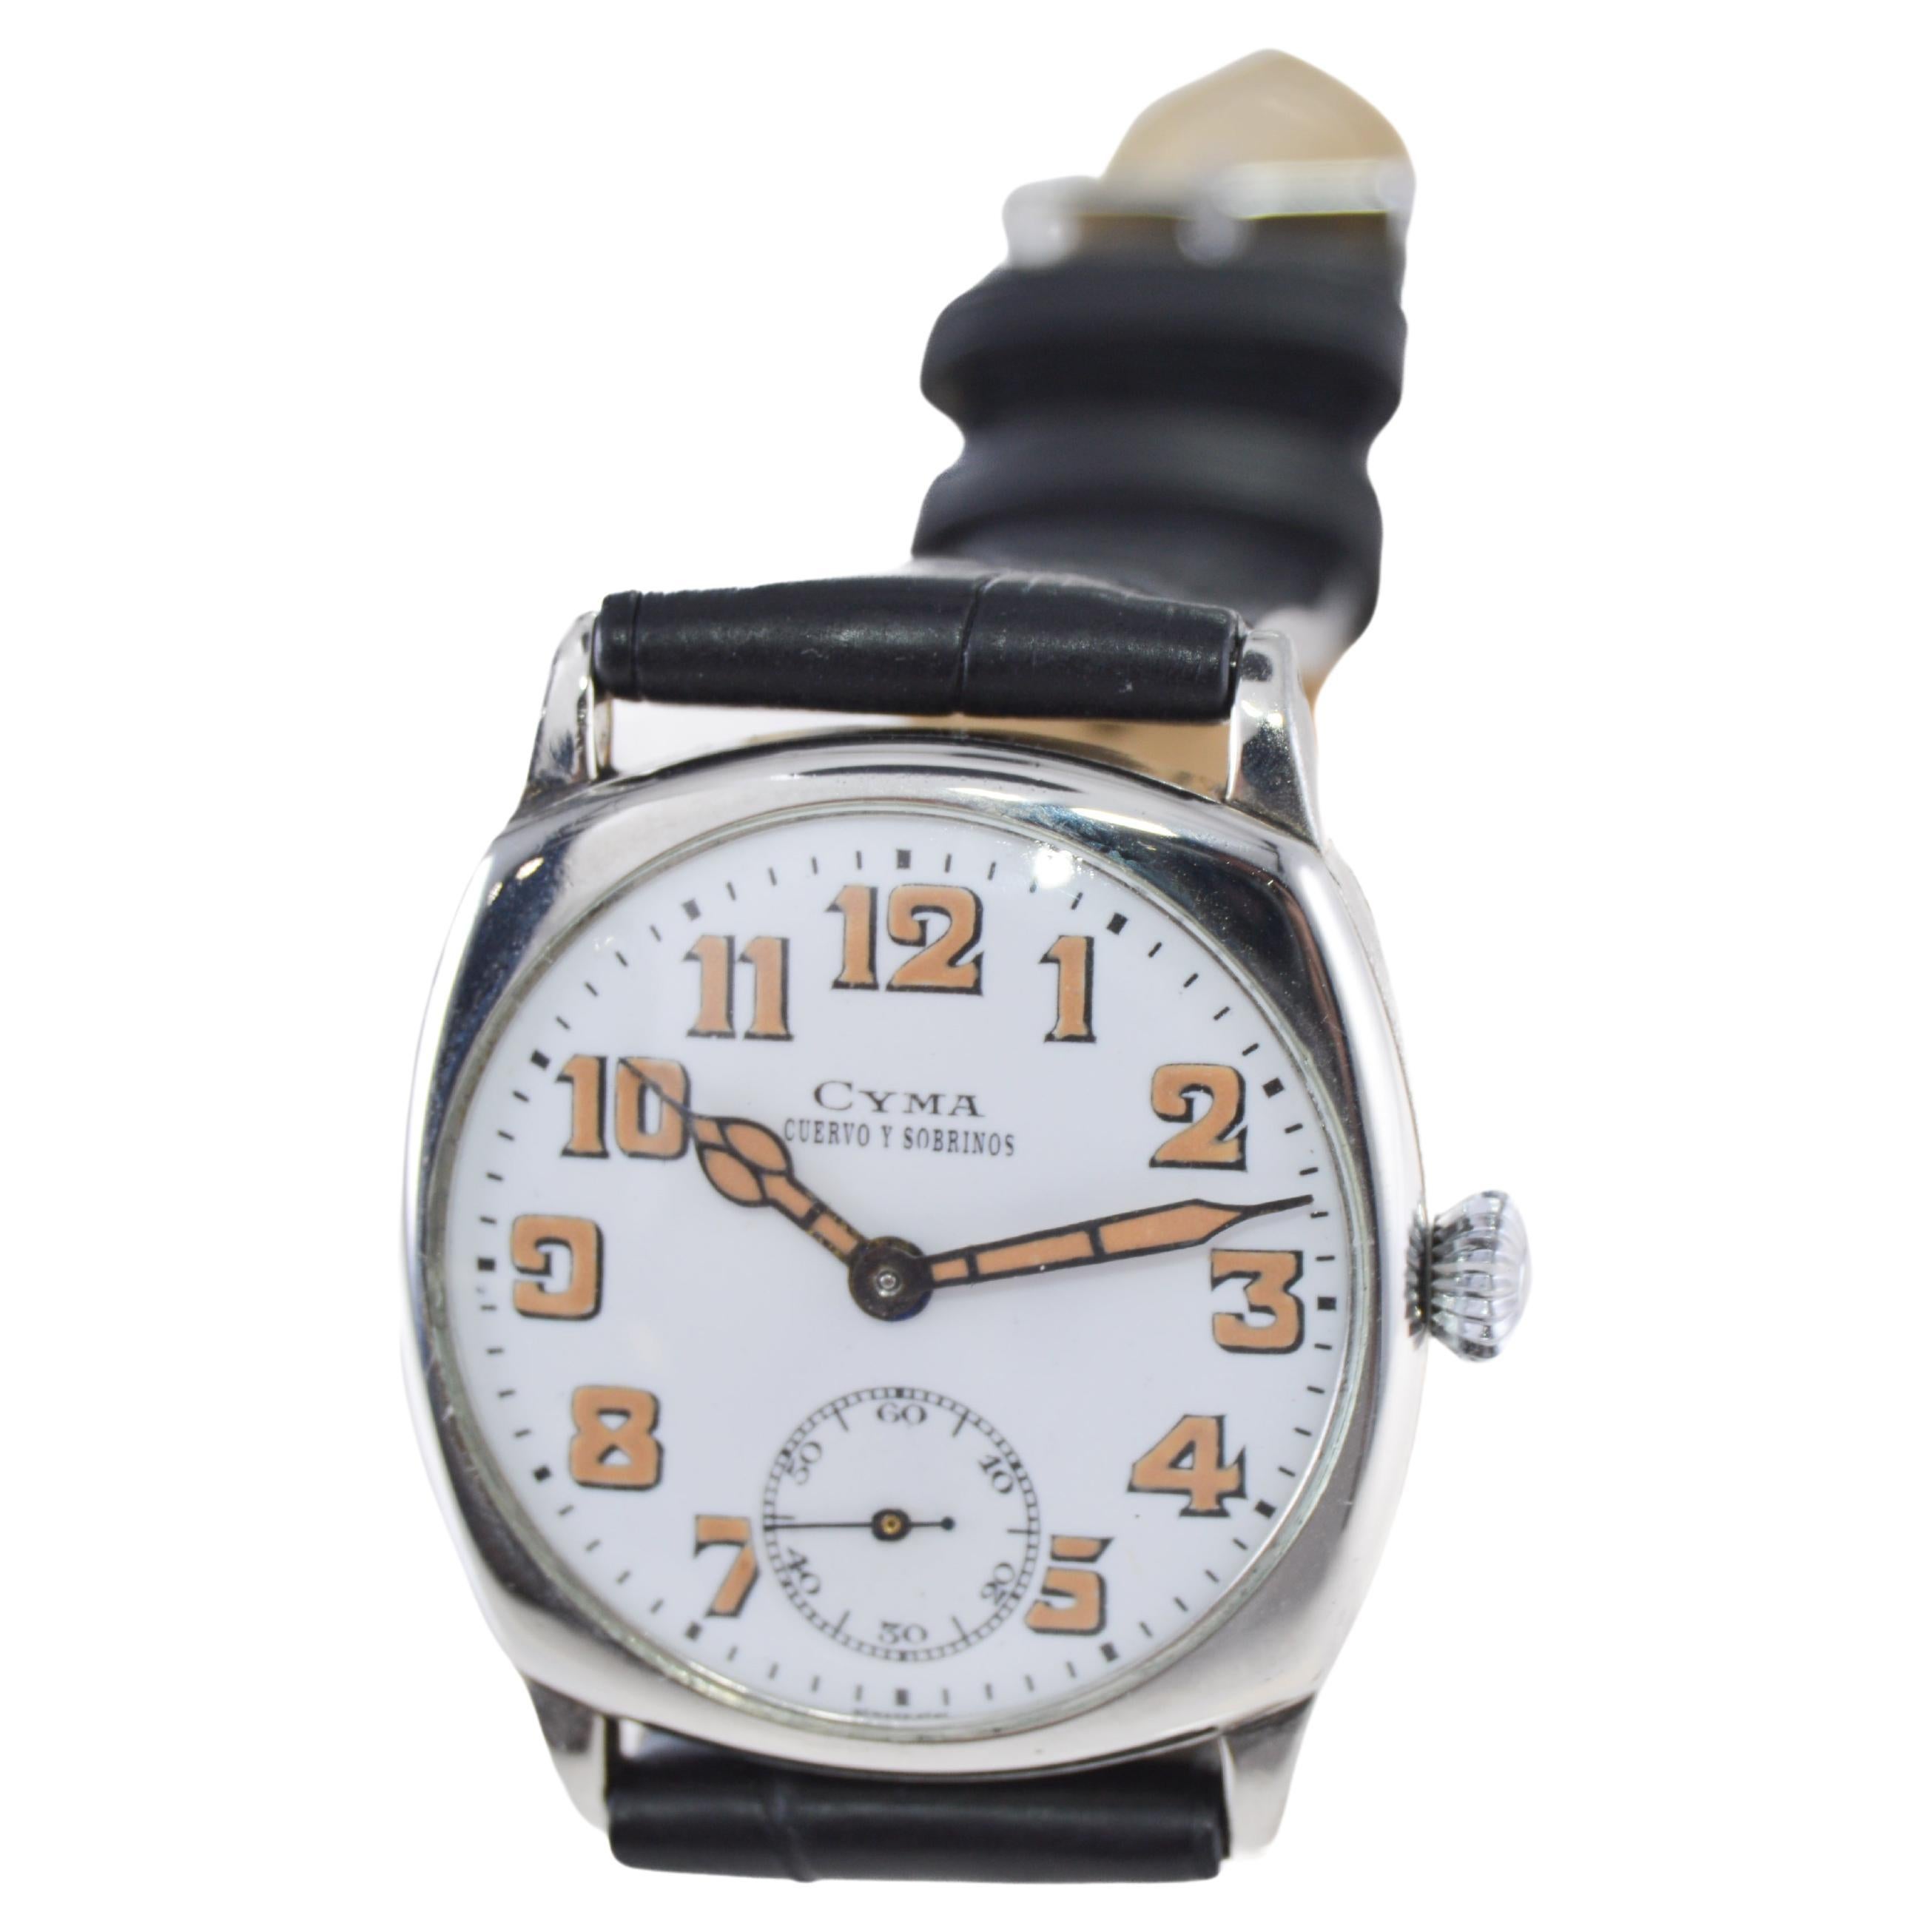 Cyma for Cuervo & Sobrinos Nickel Watch For Sale 1